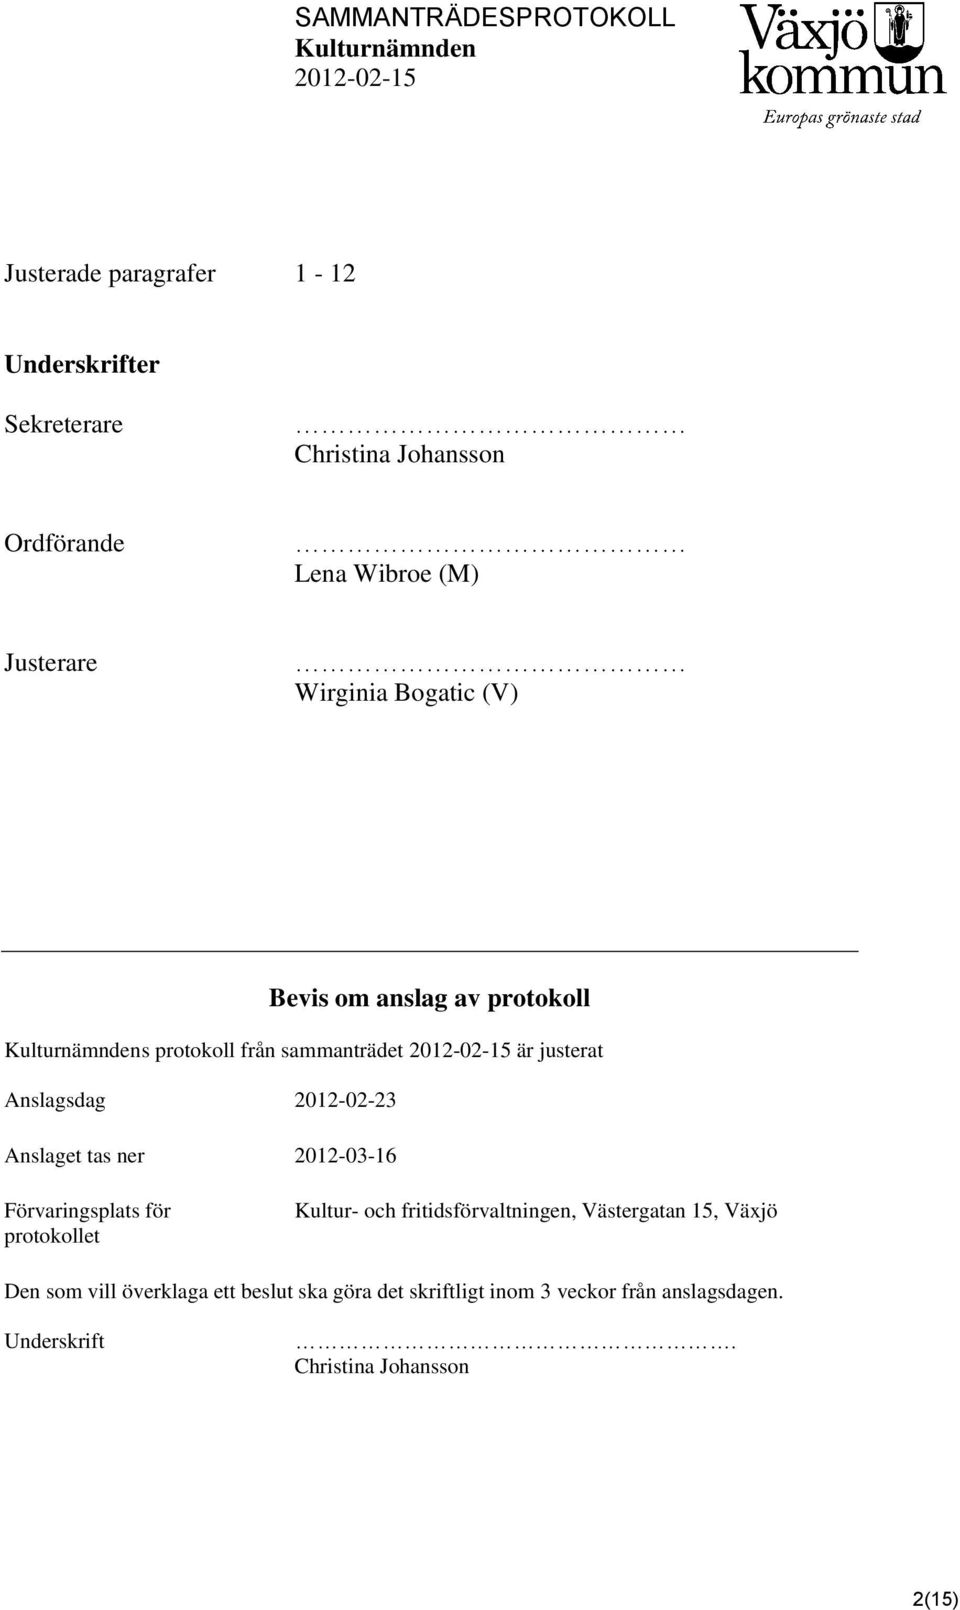 Anslaget tas ner 2012-03-16 Förvaringsplats för protokollet Kultur- och fritidsförvaltningen, Västergatan 15, Växjö